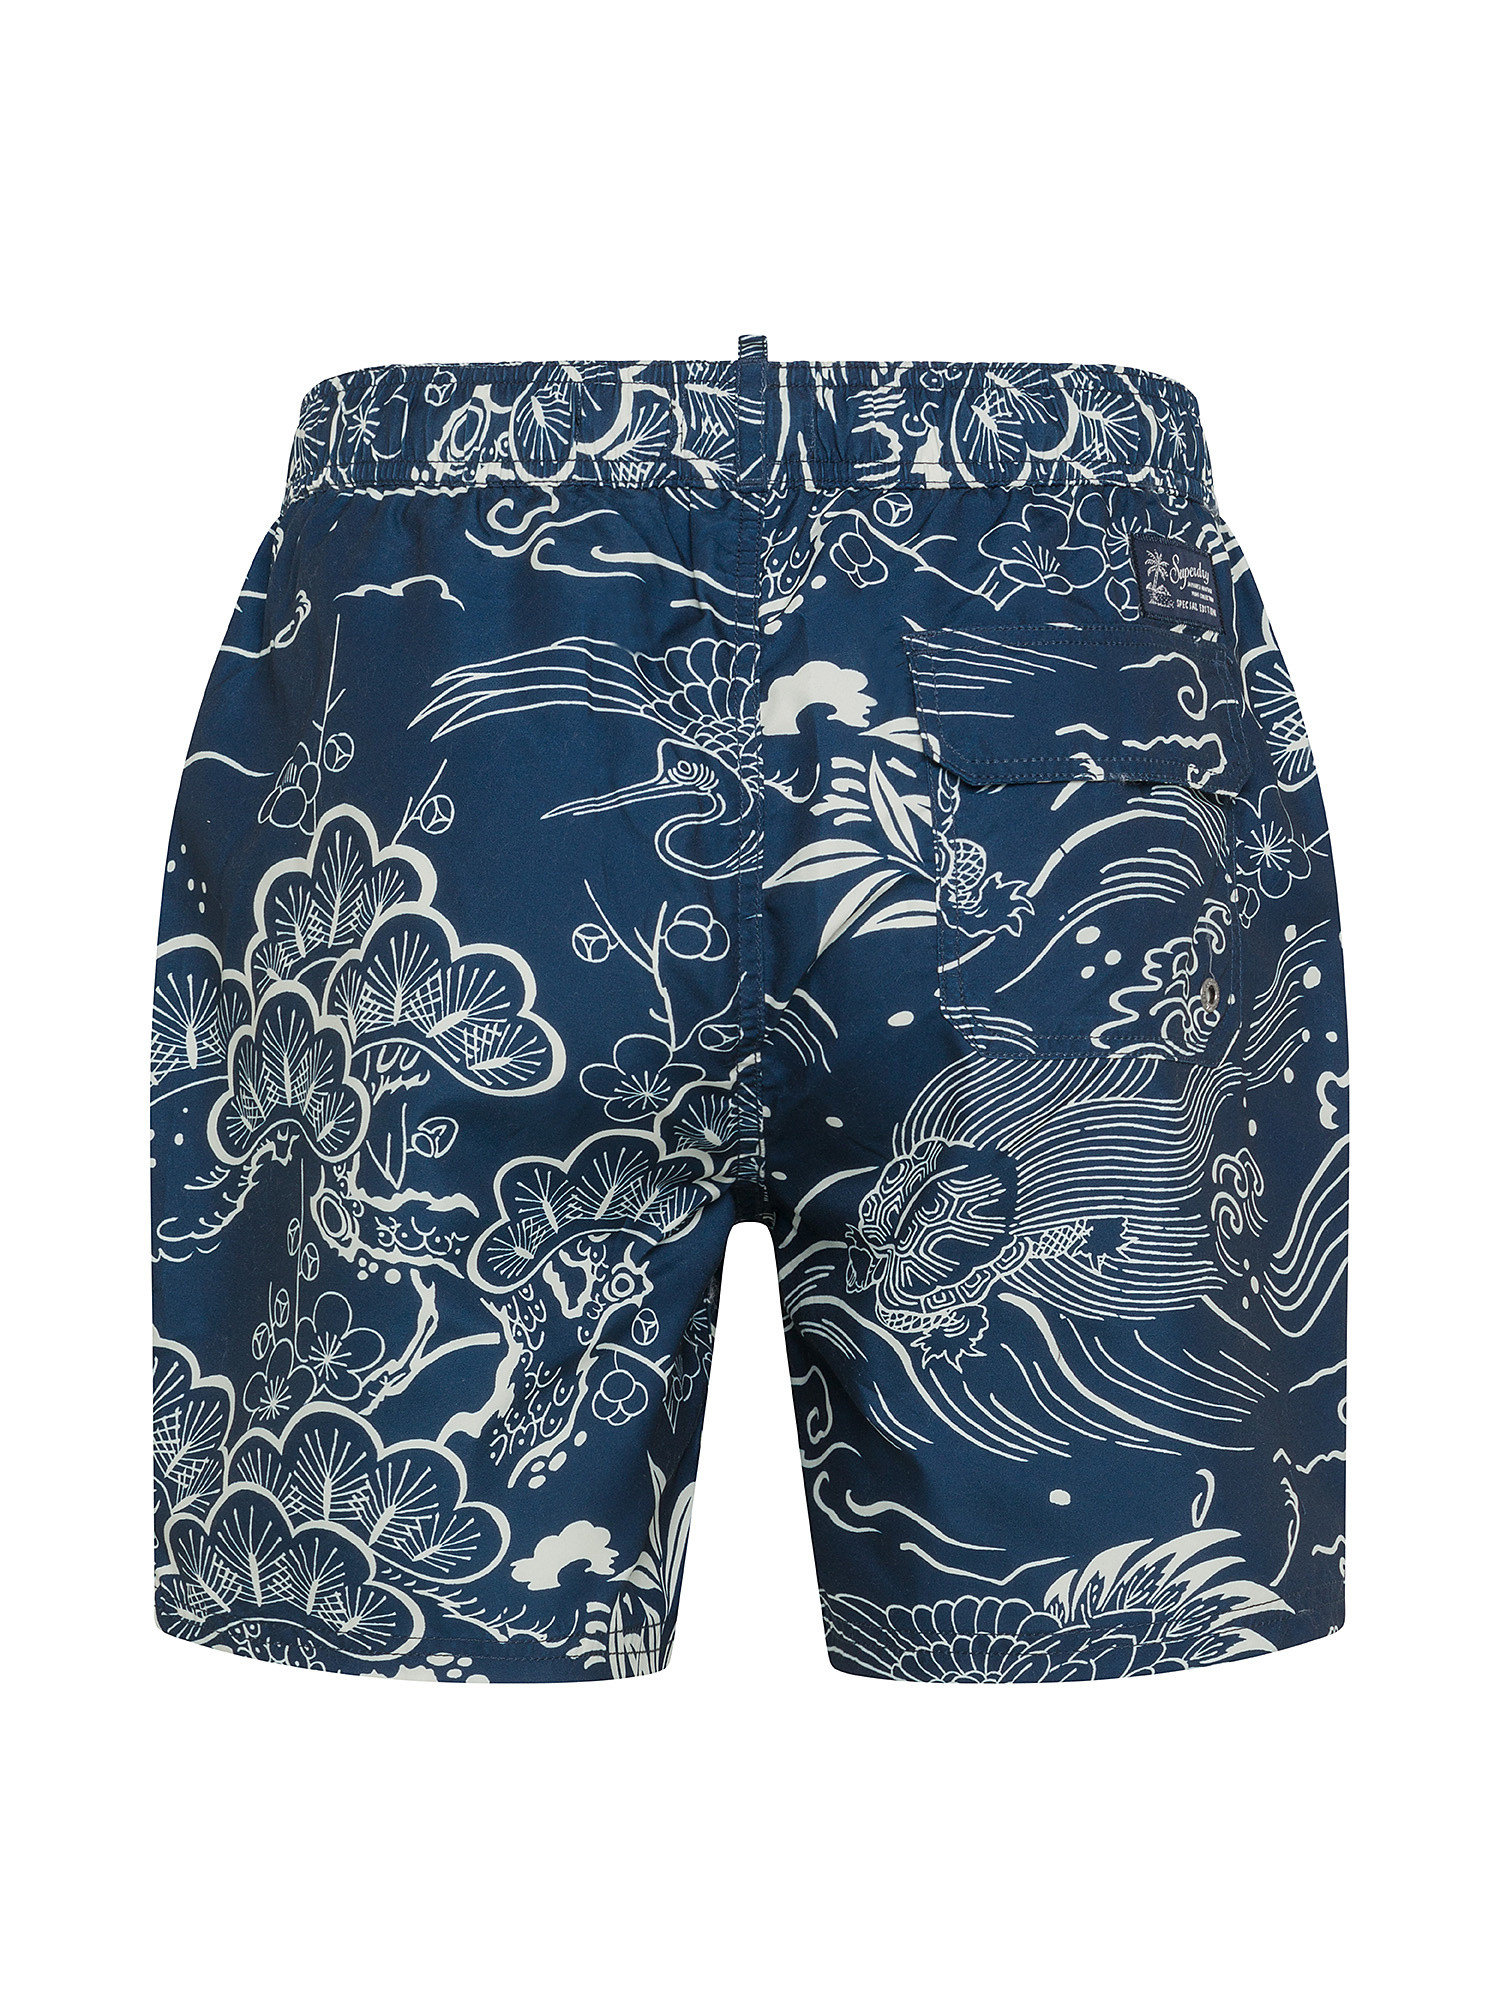 Superdry Sea Wave Print Boxer Trunks, Blue, large image number 1